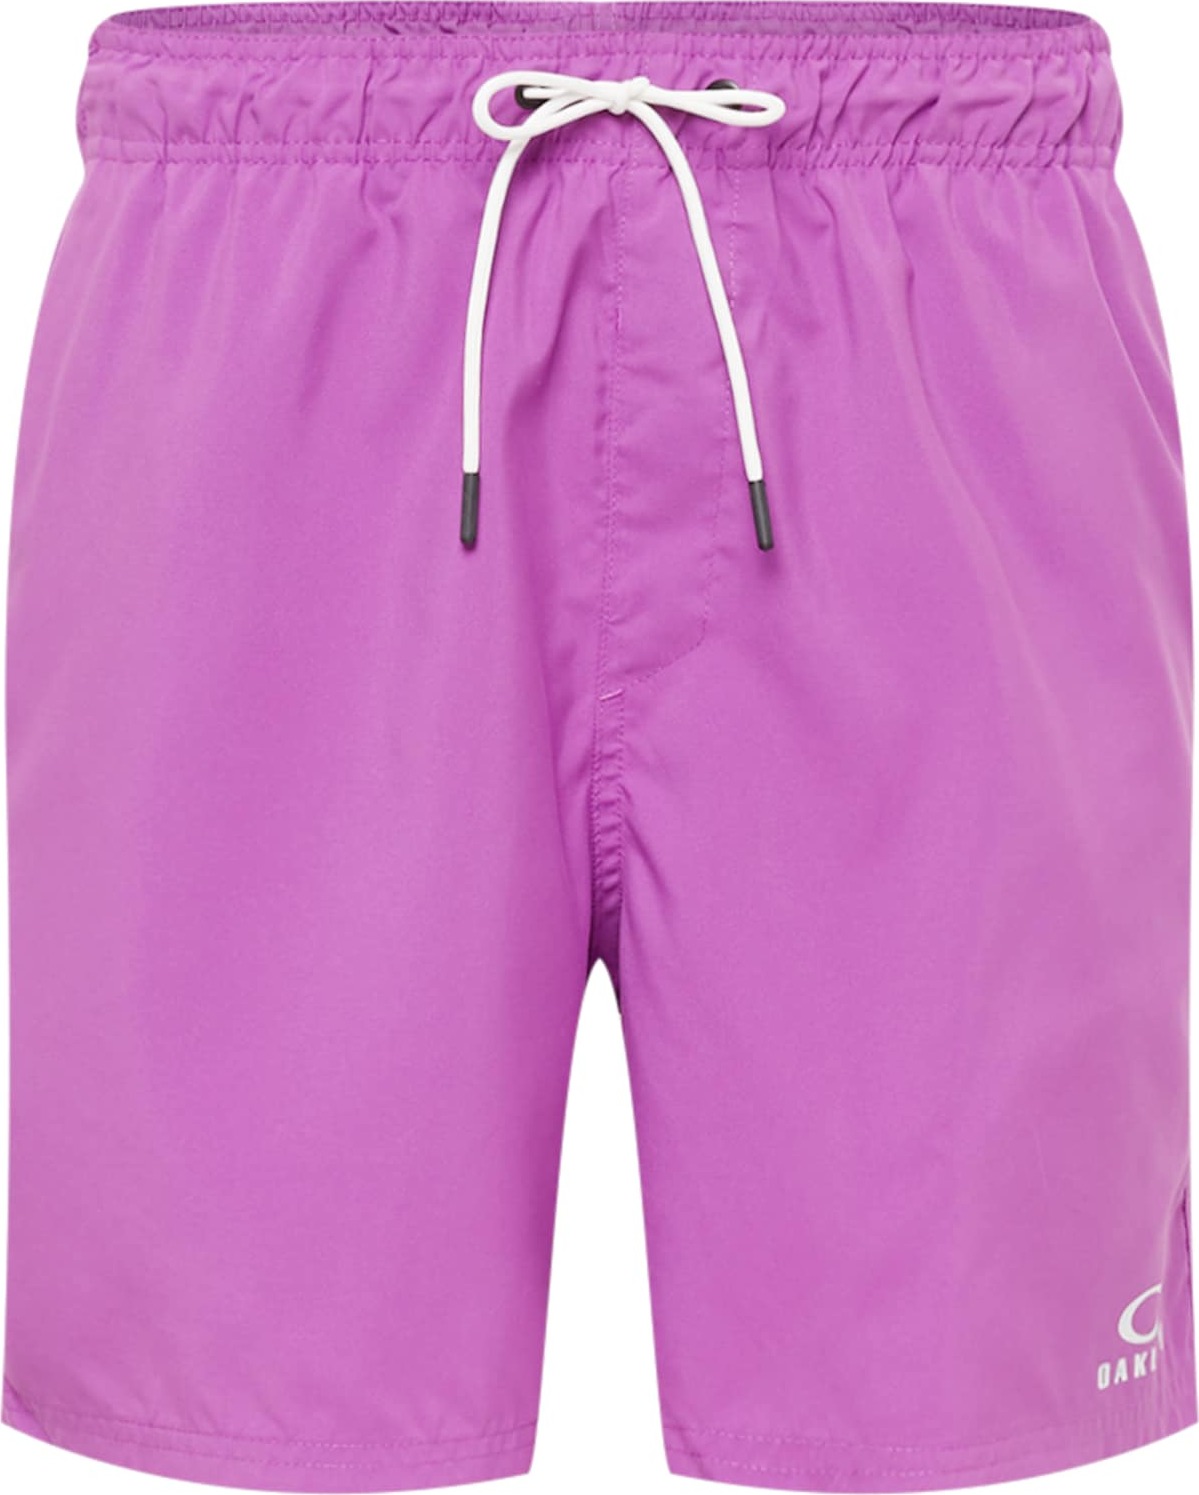 OAKLEY Sportovní kalhoty 'CLEAR LAKE' fialová / bílá